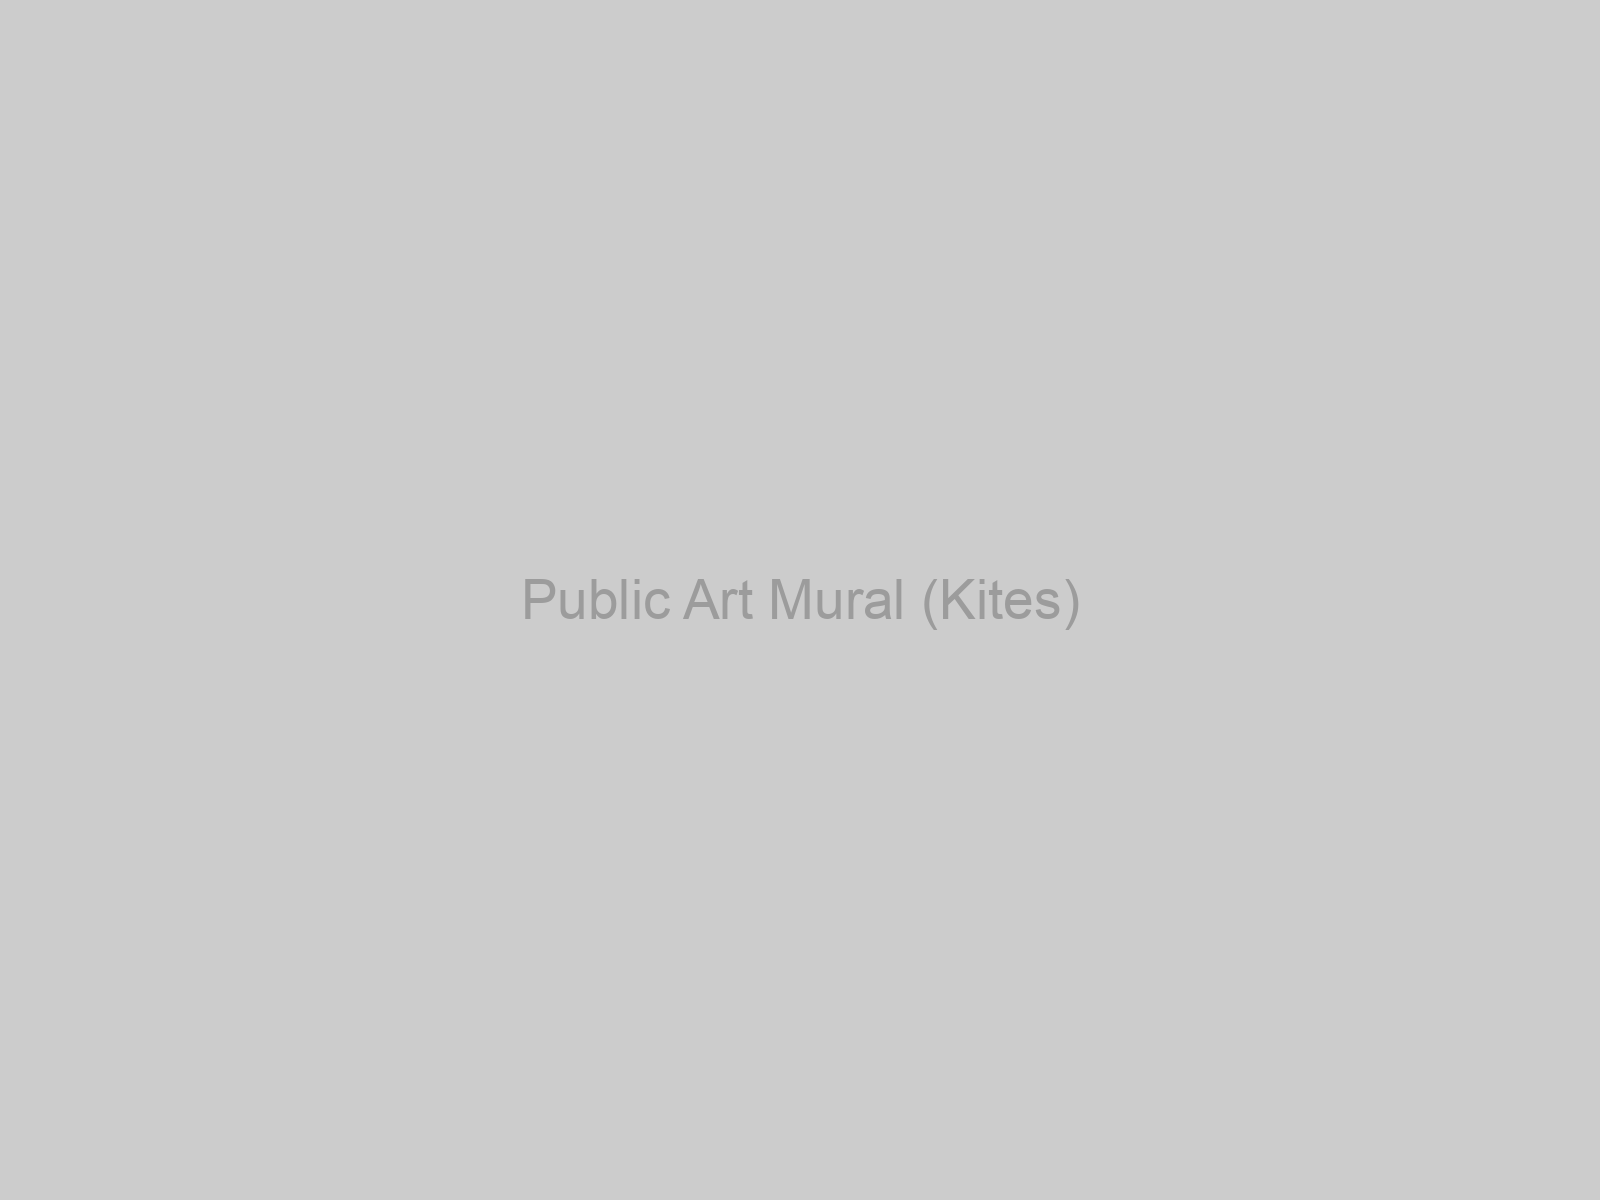 Public Art Mural (Kites)